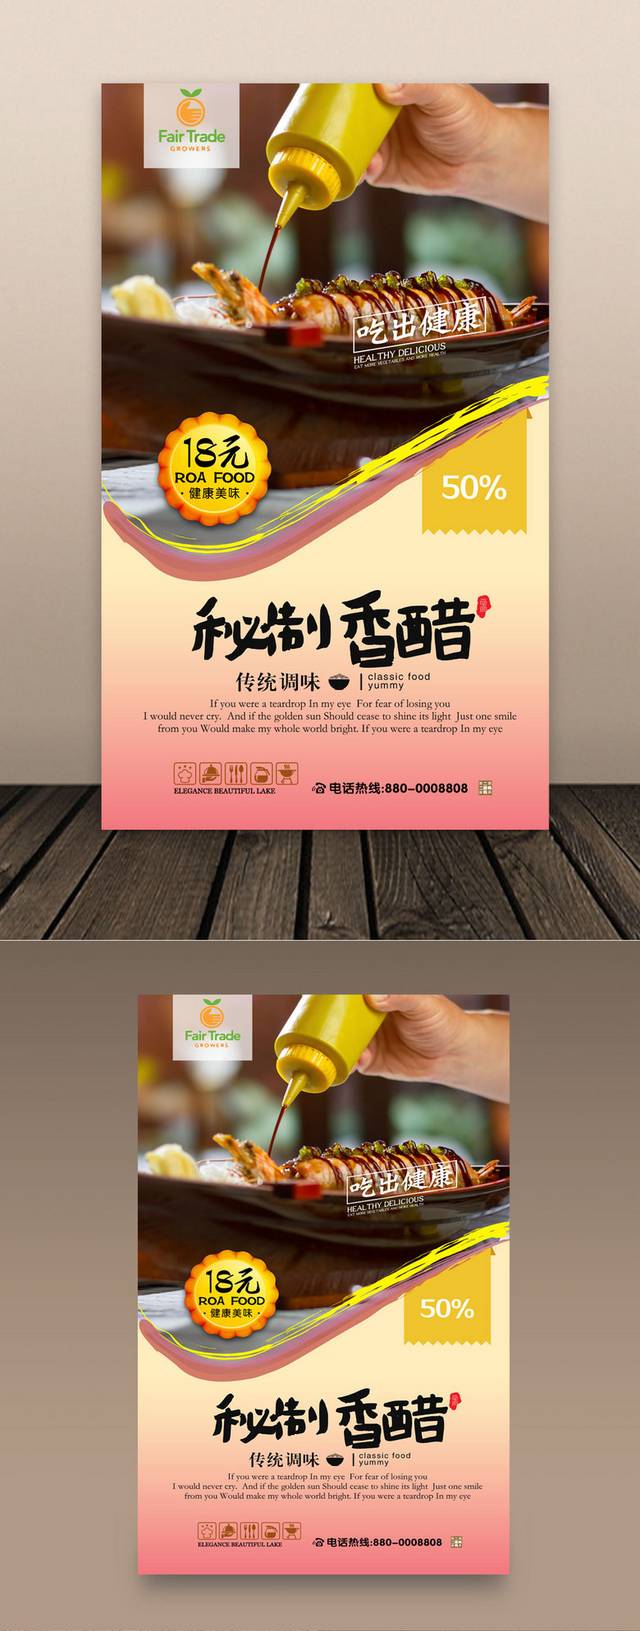 醋文化饮食海报设计